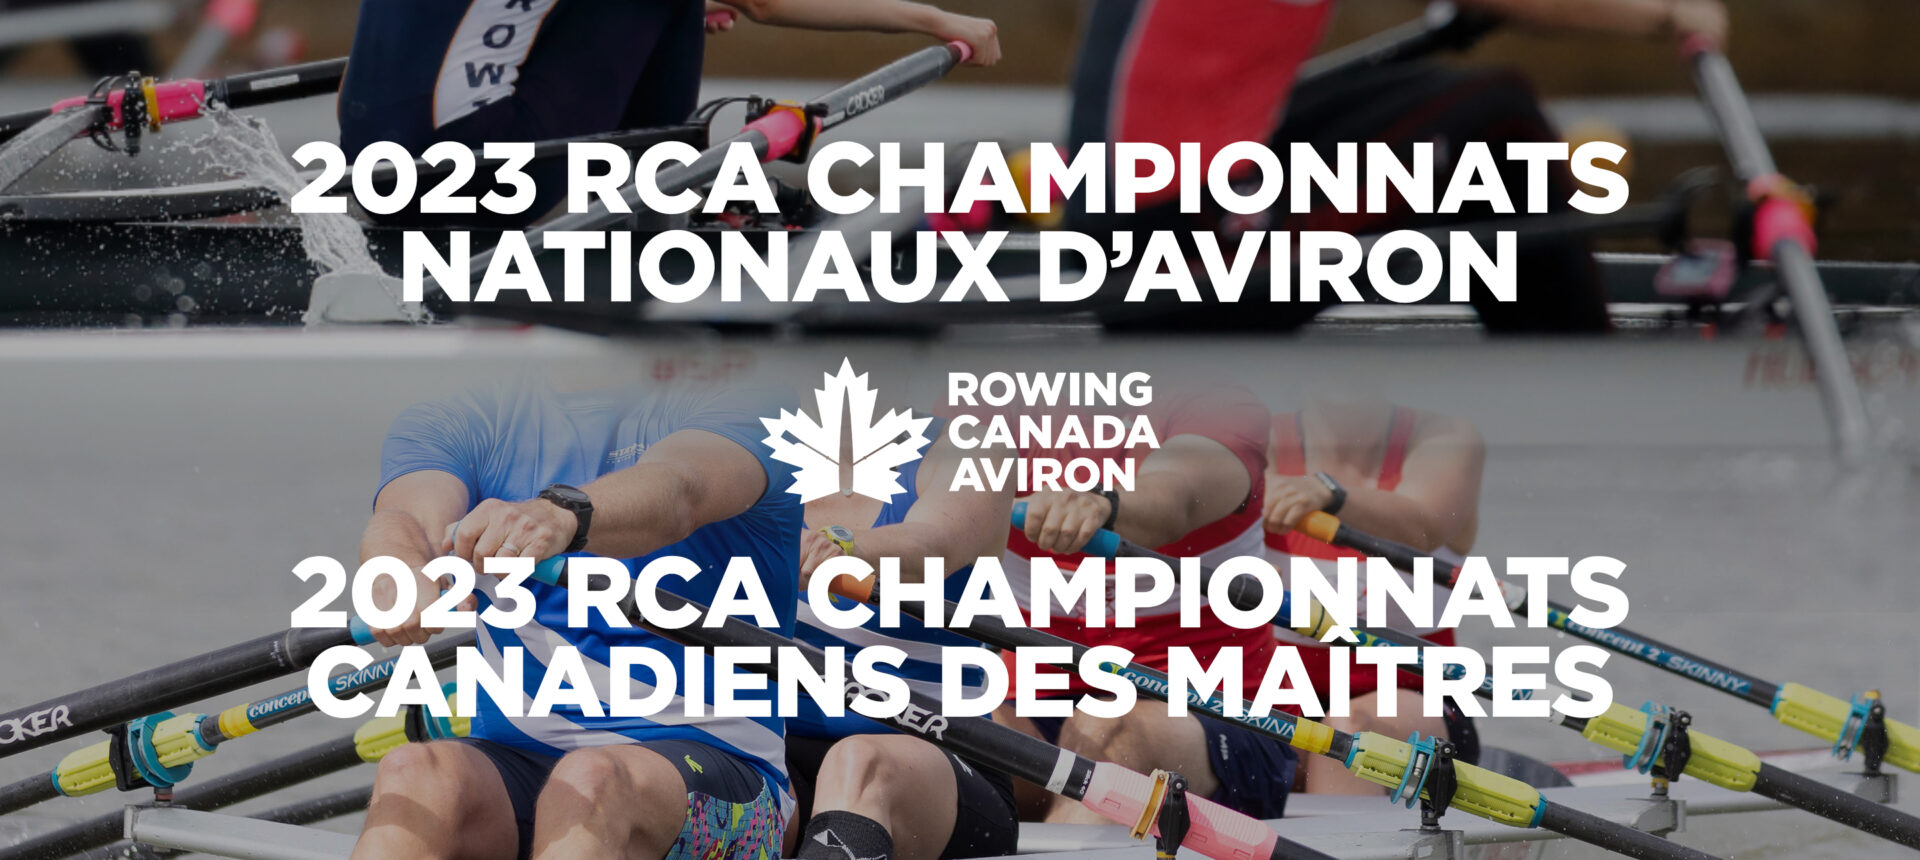 Annonce concernant les Championnats nationaux 2023 de RCA